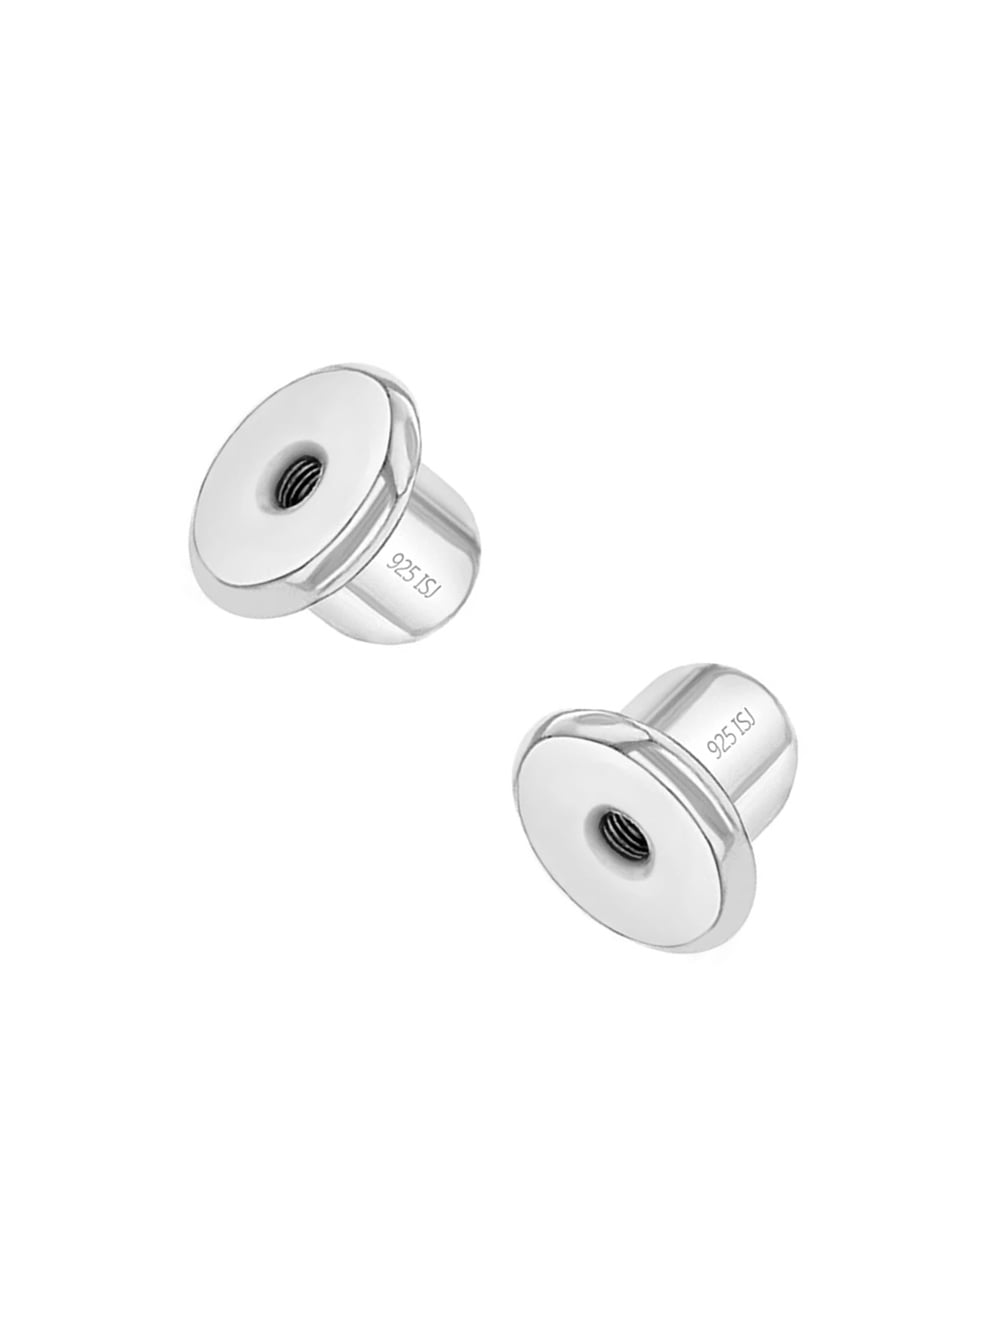 100% 925 Sterling Earring Locking Screw Decorative Stud Earring Findings Back 